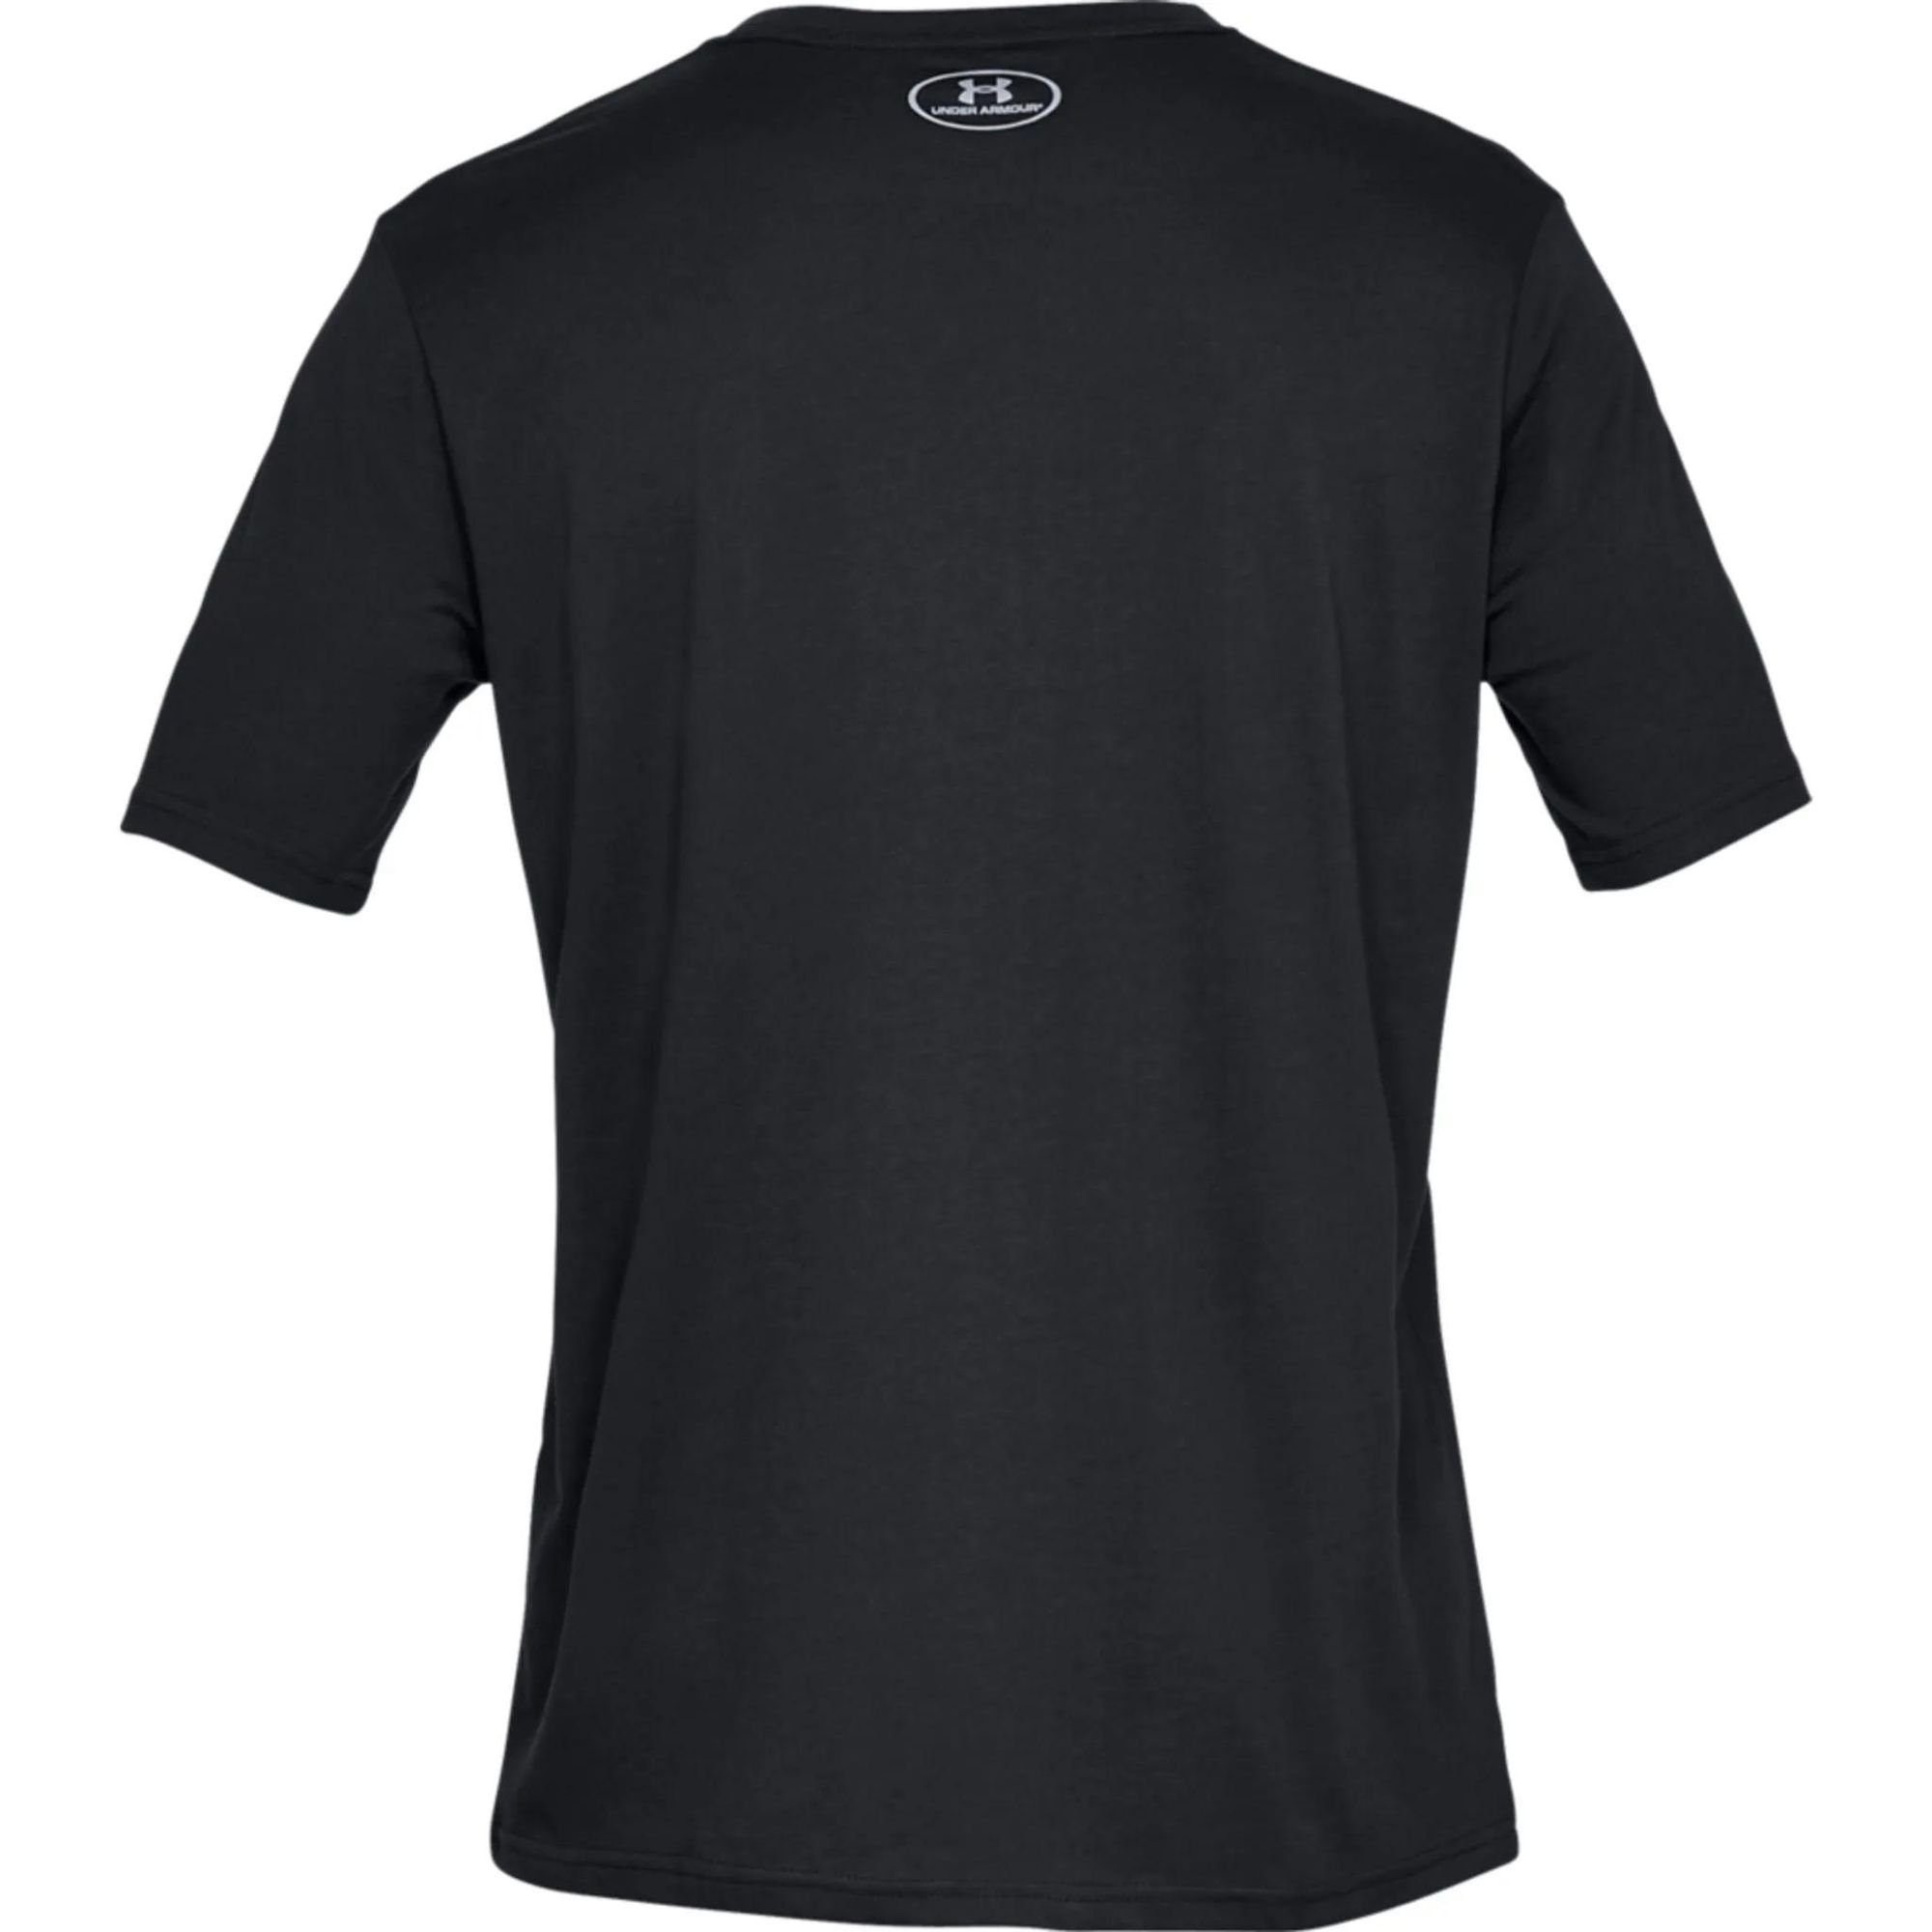 Kurzarm-Oberteil UA Under Schwarz Team Issue T-Shirt Wordmark Armour® Herren